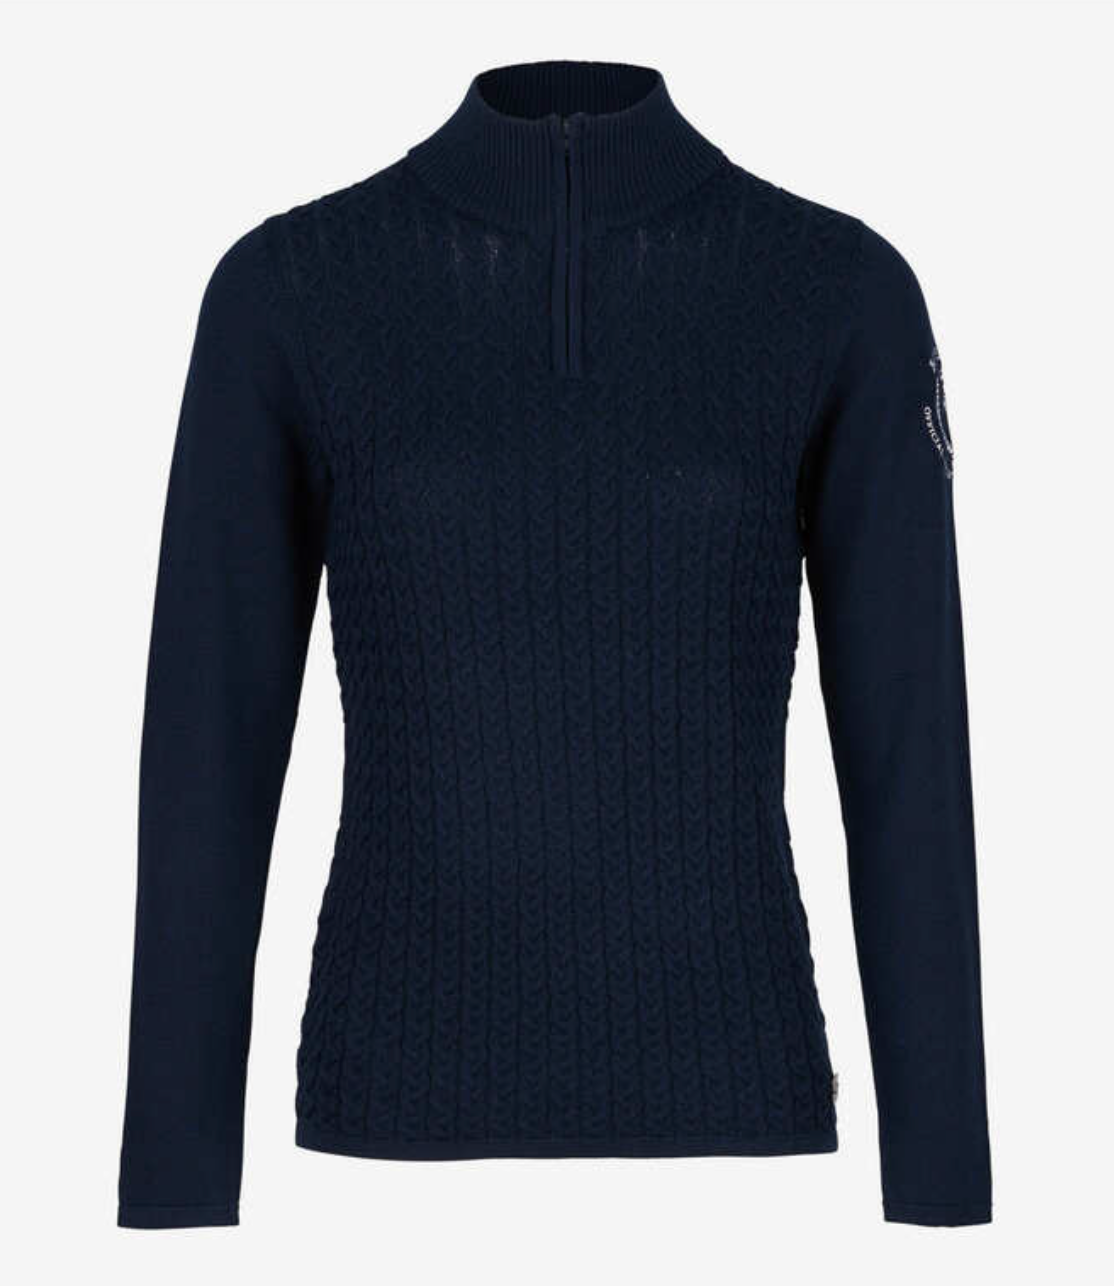 B Vertigo Ruth Knitted Pullover Sweaters B Vertigo - Equestrian Fashion Outfitters